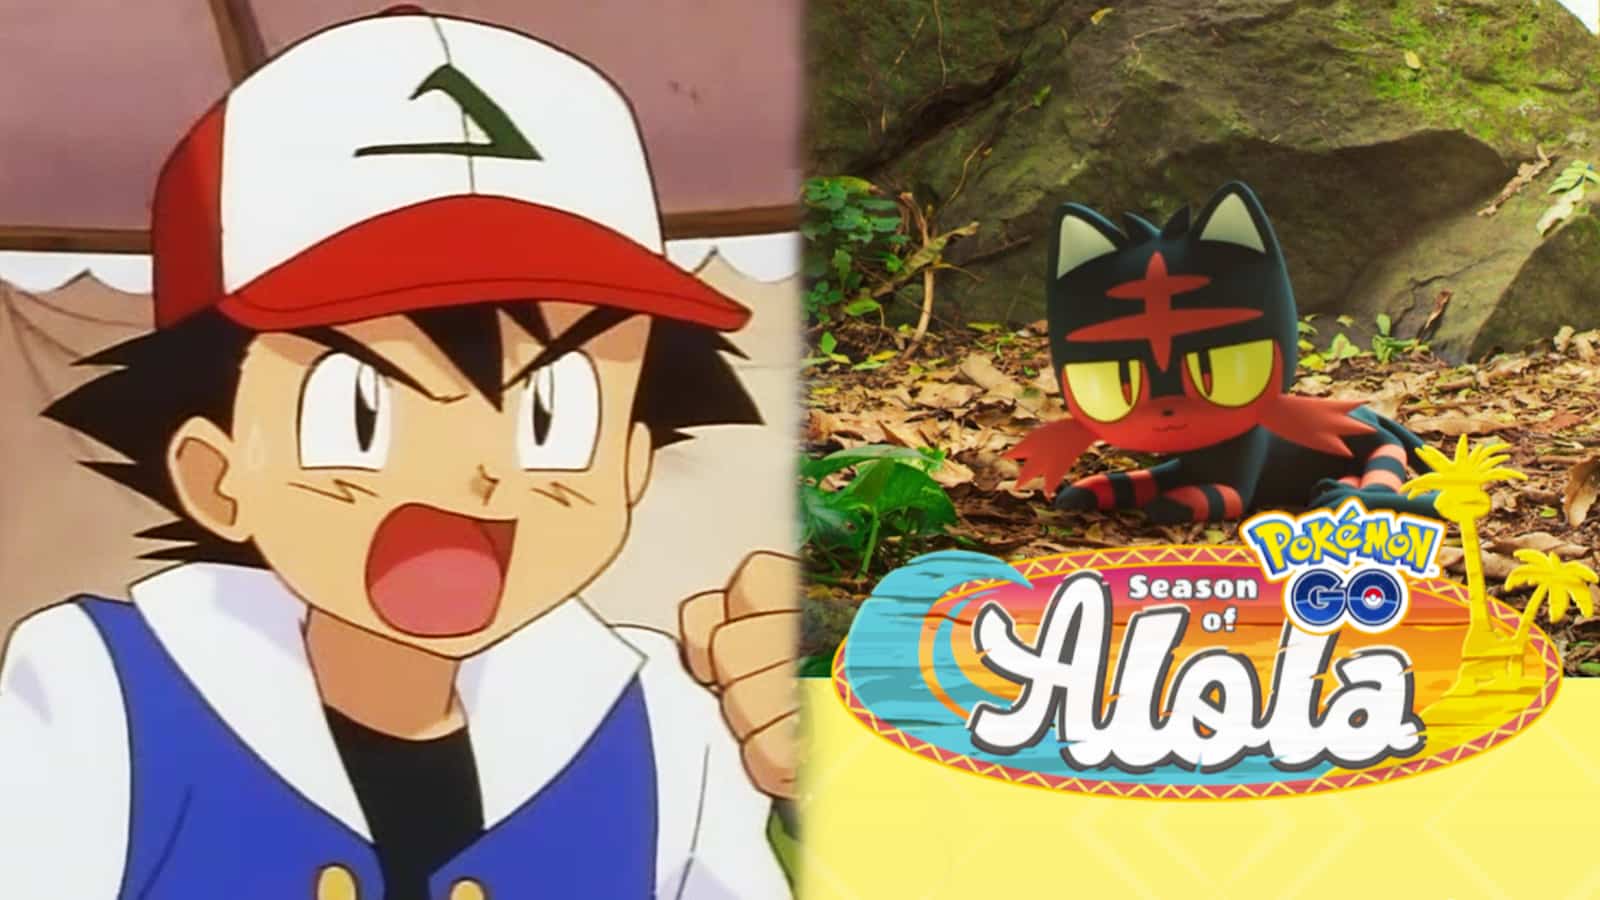 Ash Ketchum from Pokemon anime next to Pokemon Go Season of Alola promotional art screenshot.